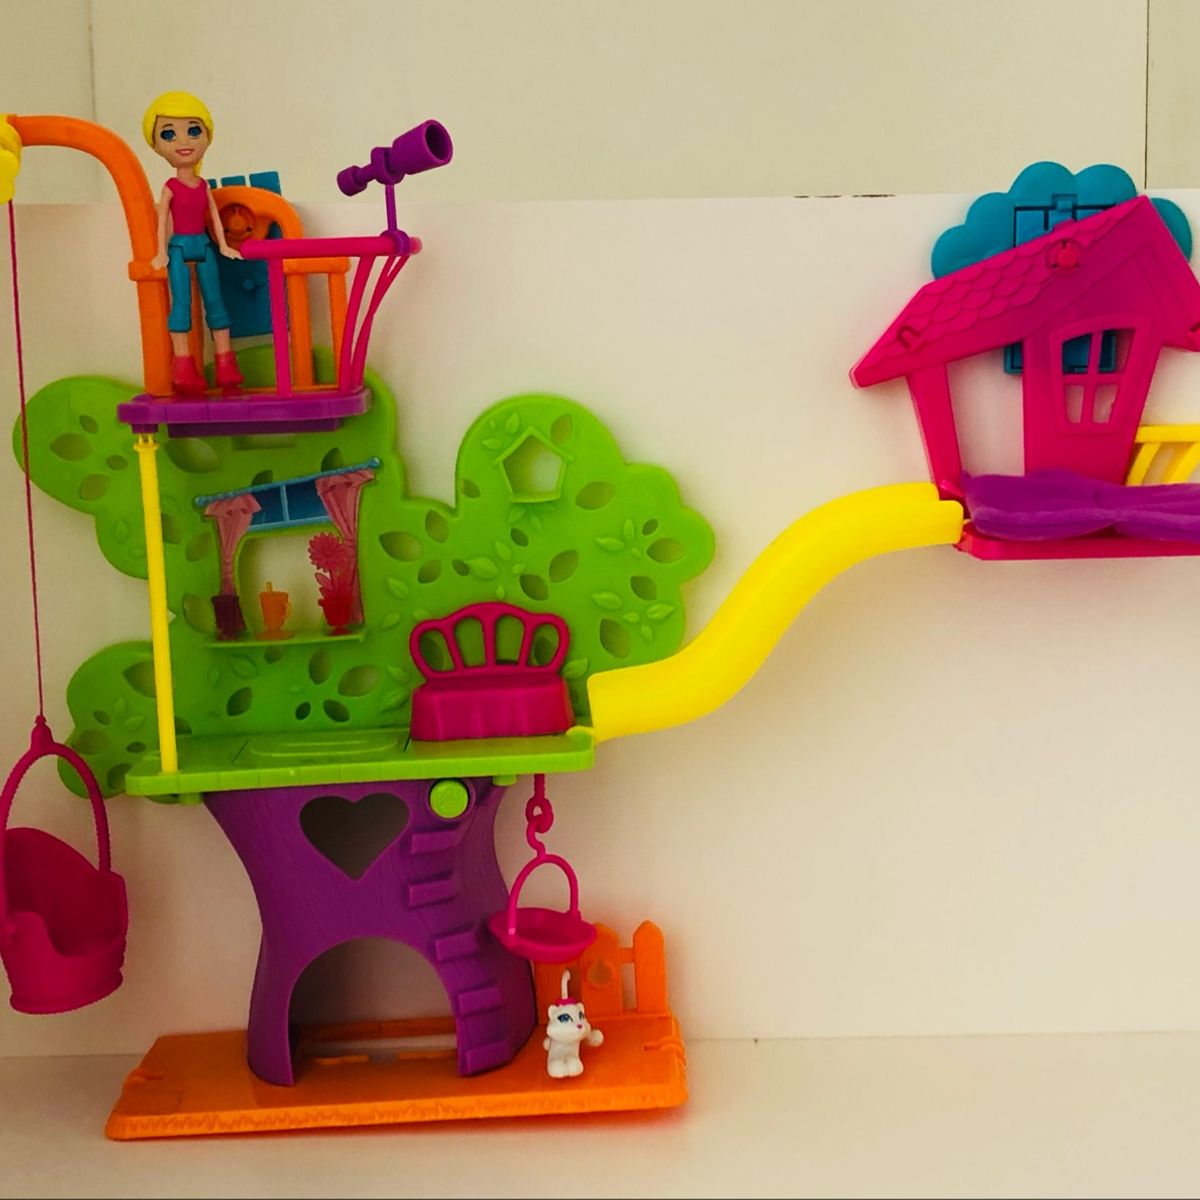 Polly Wall Party Casa da Arvore - Y7113 : : Brinquedos e Jogos